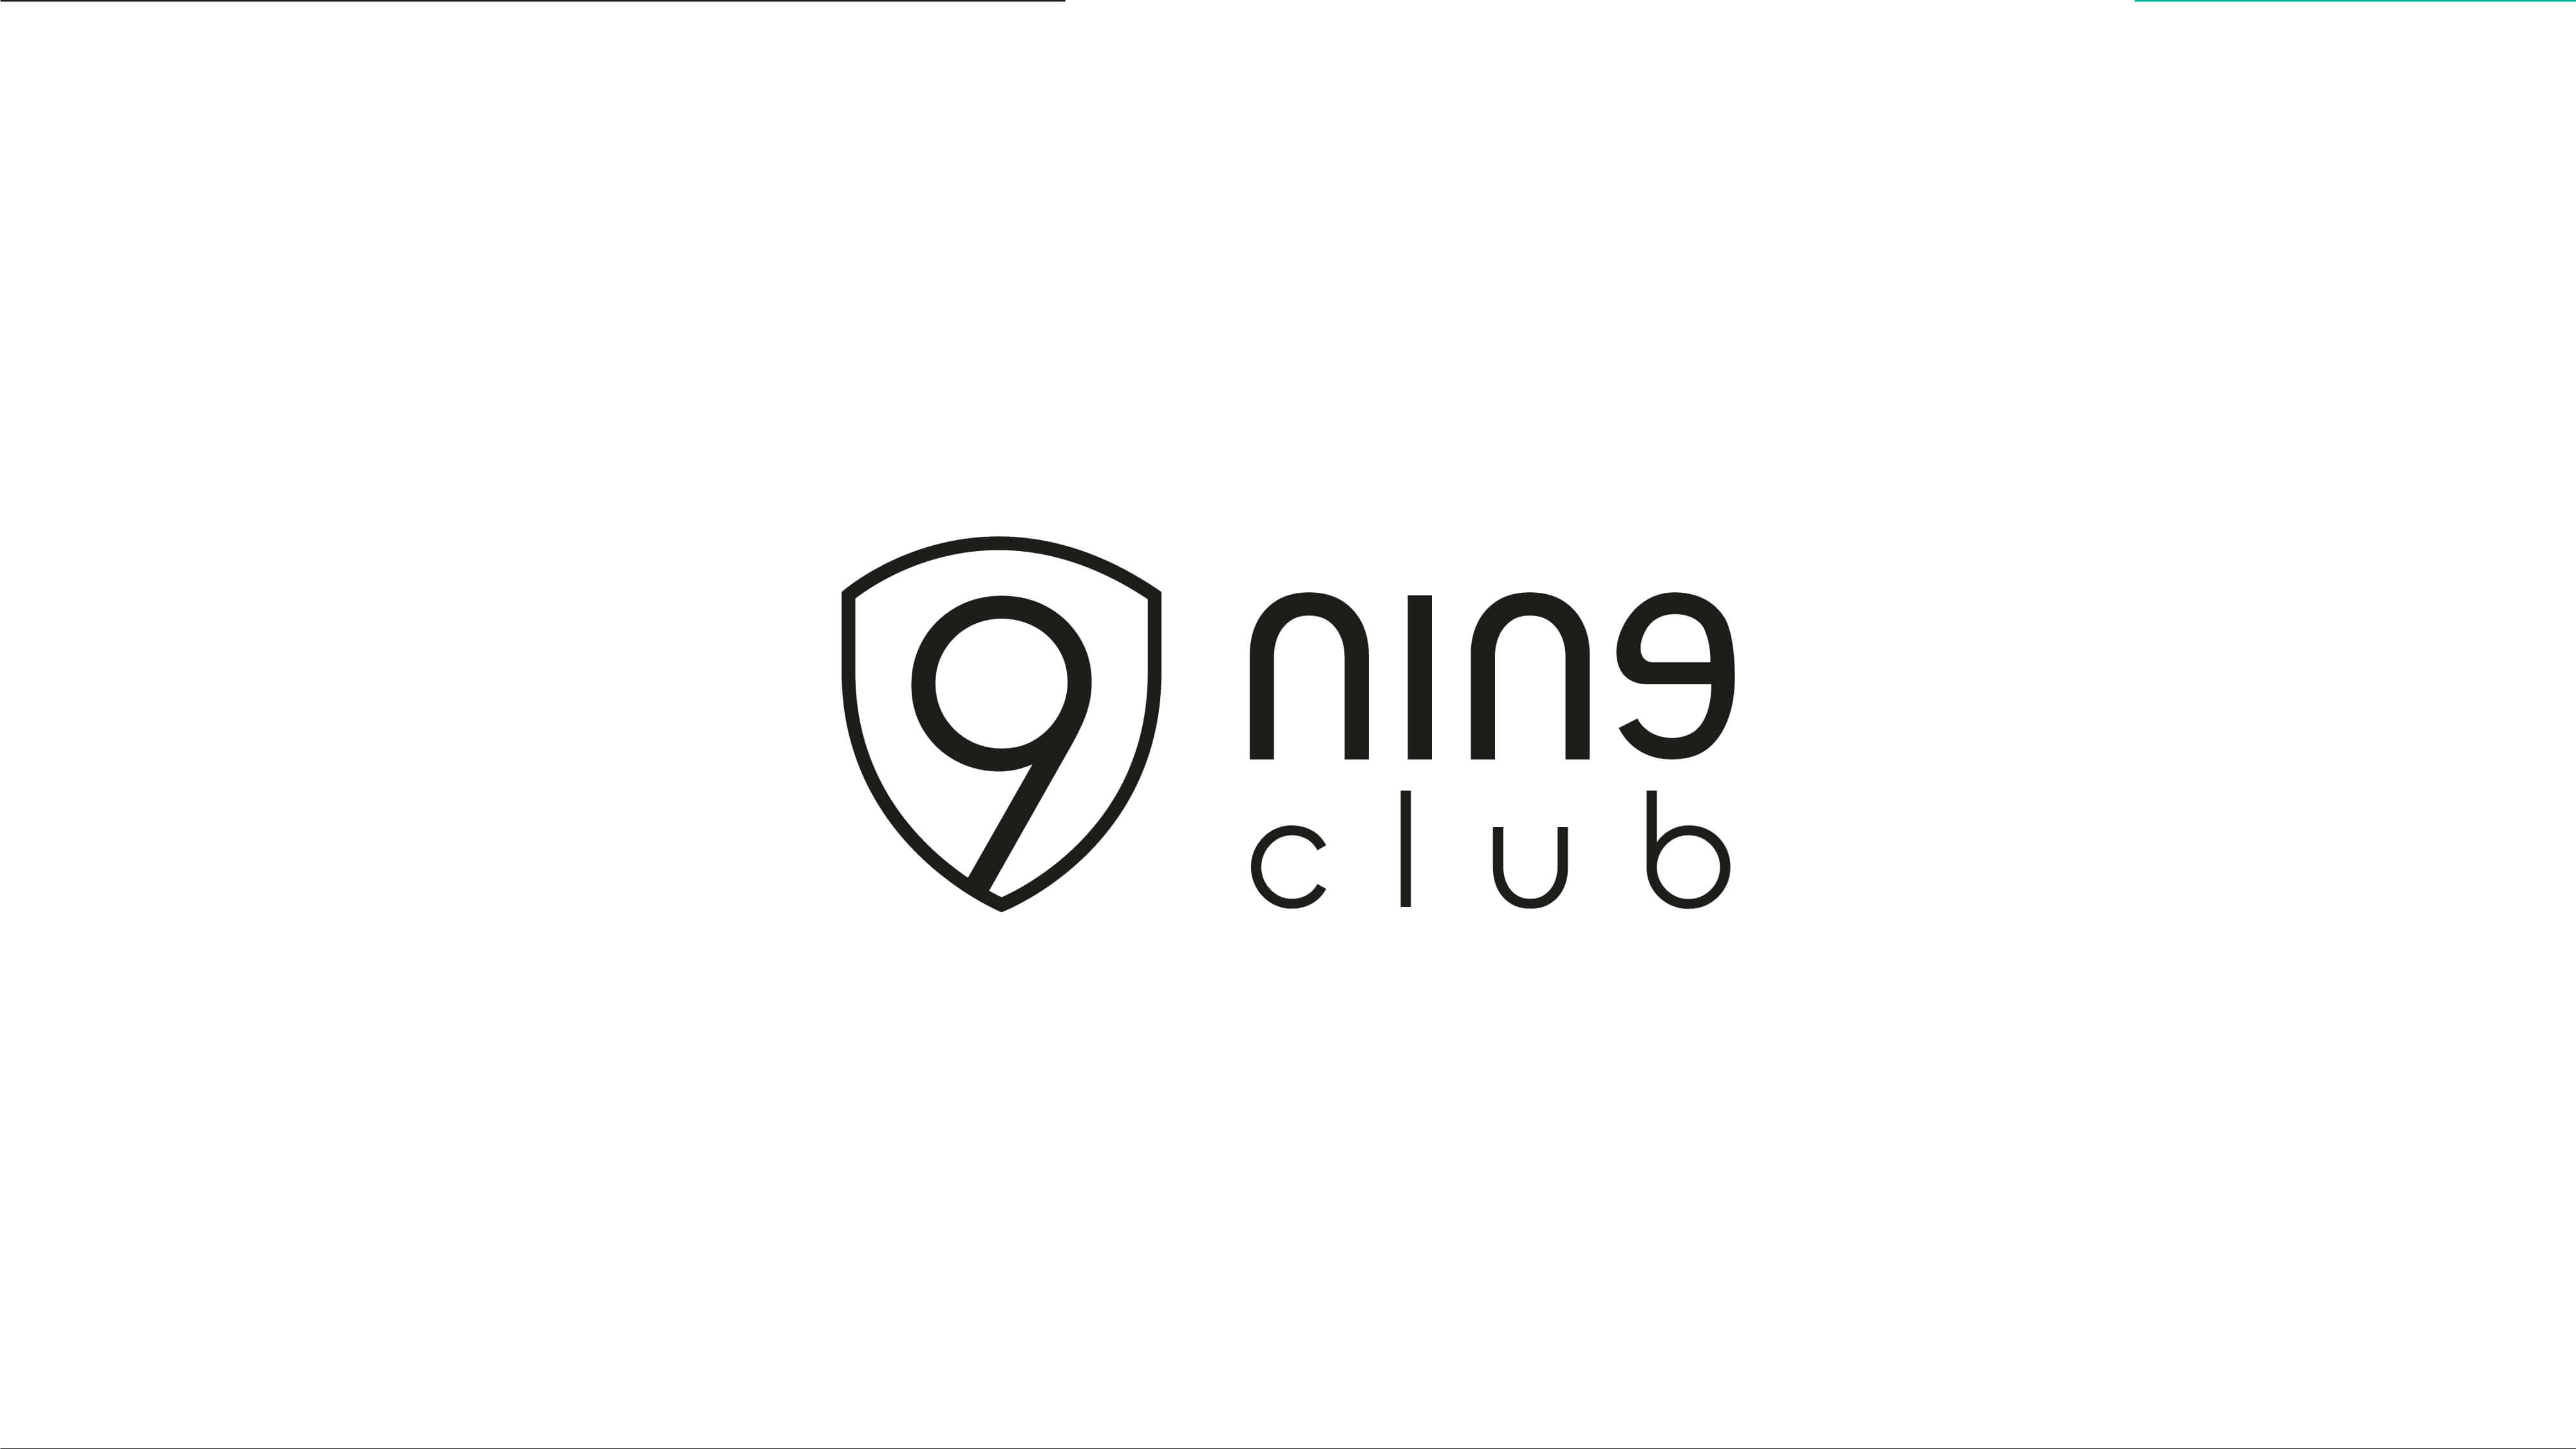 logo nine club horizontal